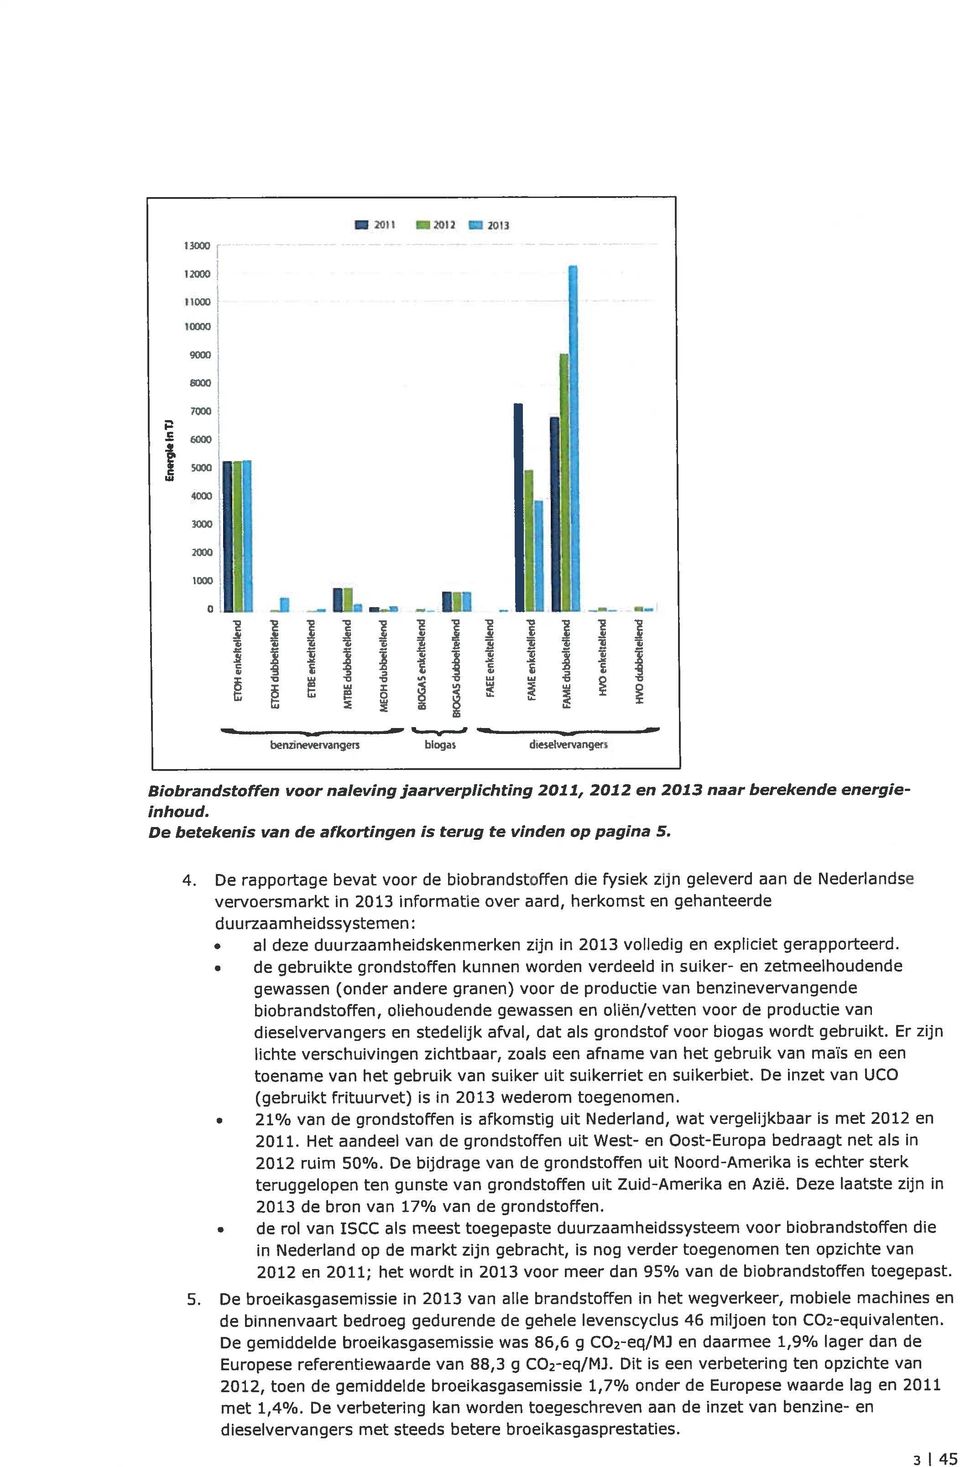 De rapportage bevat voor de biobrandstoffen die fysiek zijn geleverd aan de Nederlandse vervoersmarkt in 2013 informatie over aard, herkomst en gehanteerde duurzaamheidssystemen: al deze